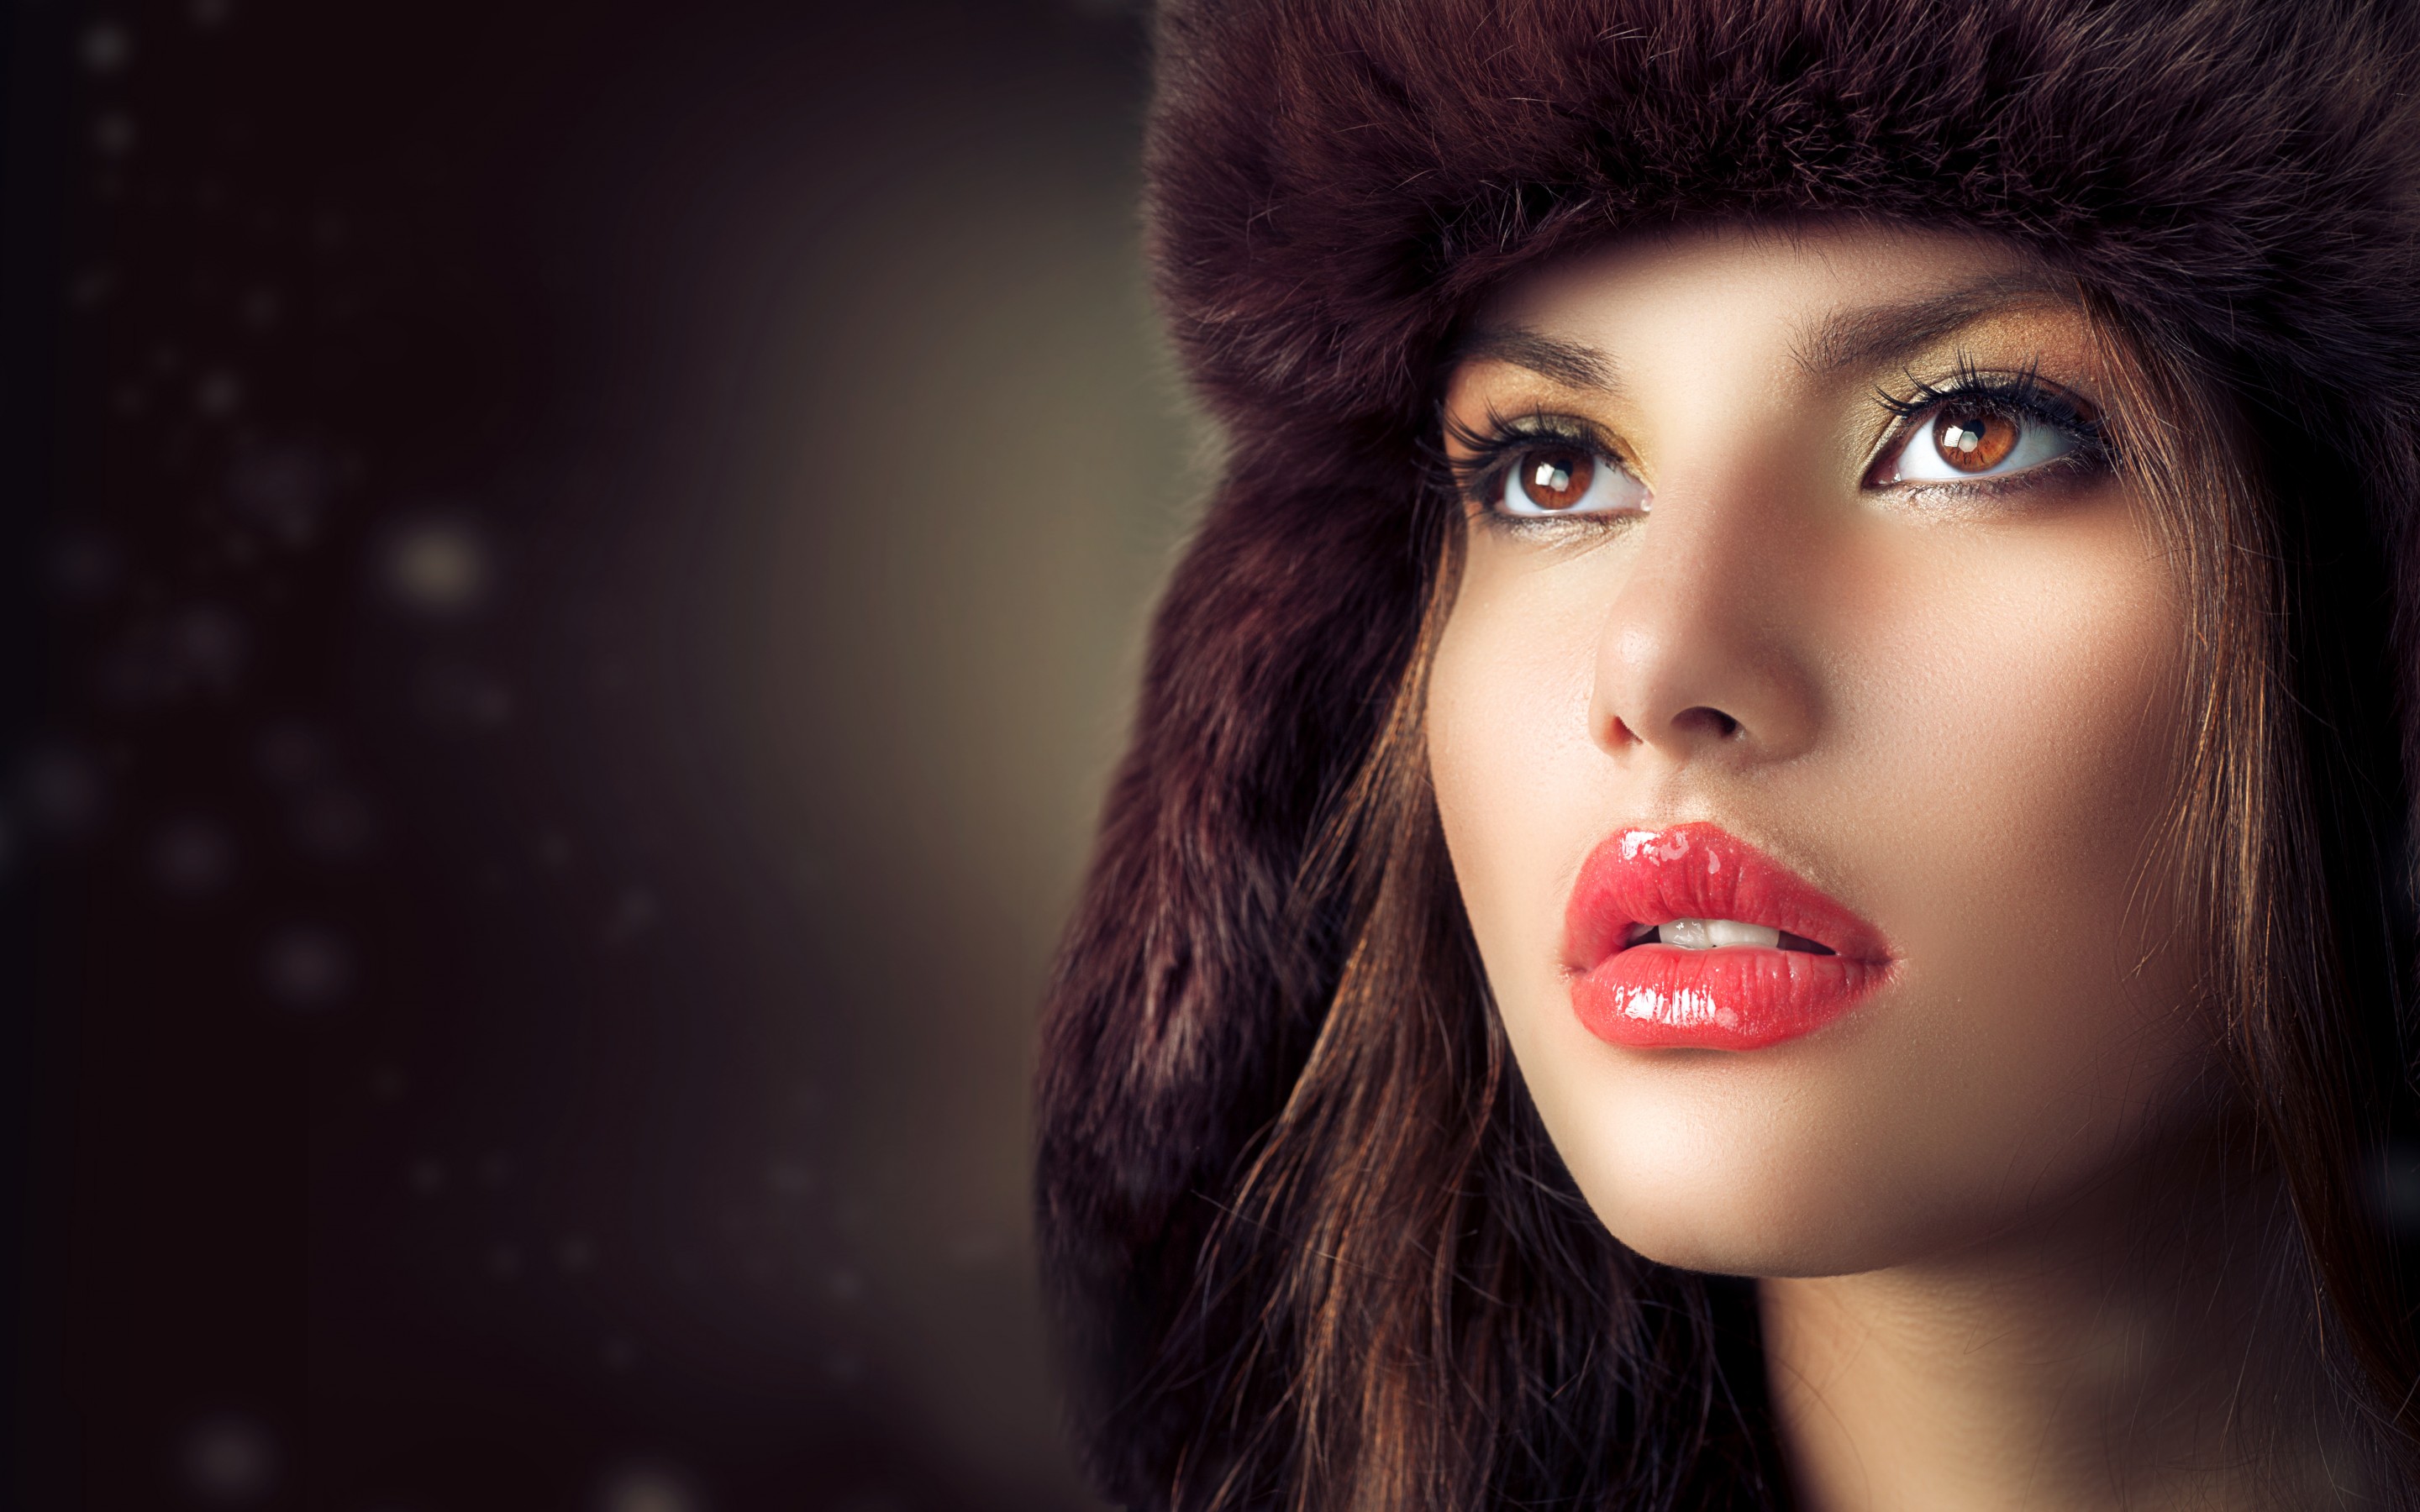 Beautiful Amanda Rich, Model, Makeup, Top File - Girls Beautiful Face Hd - HD Wallpaper 